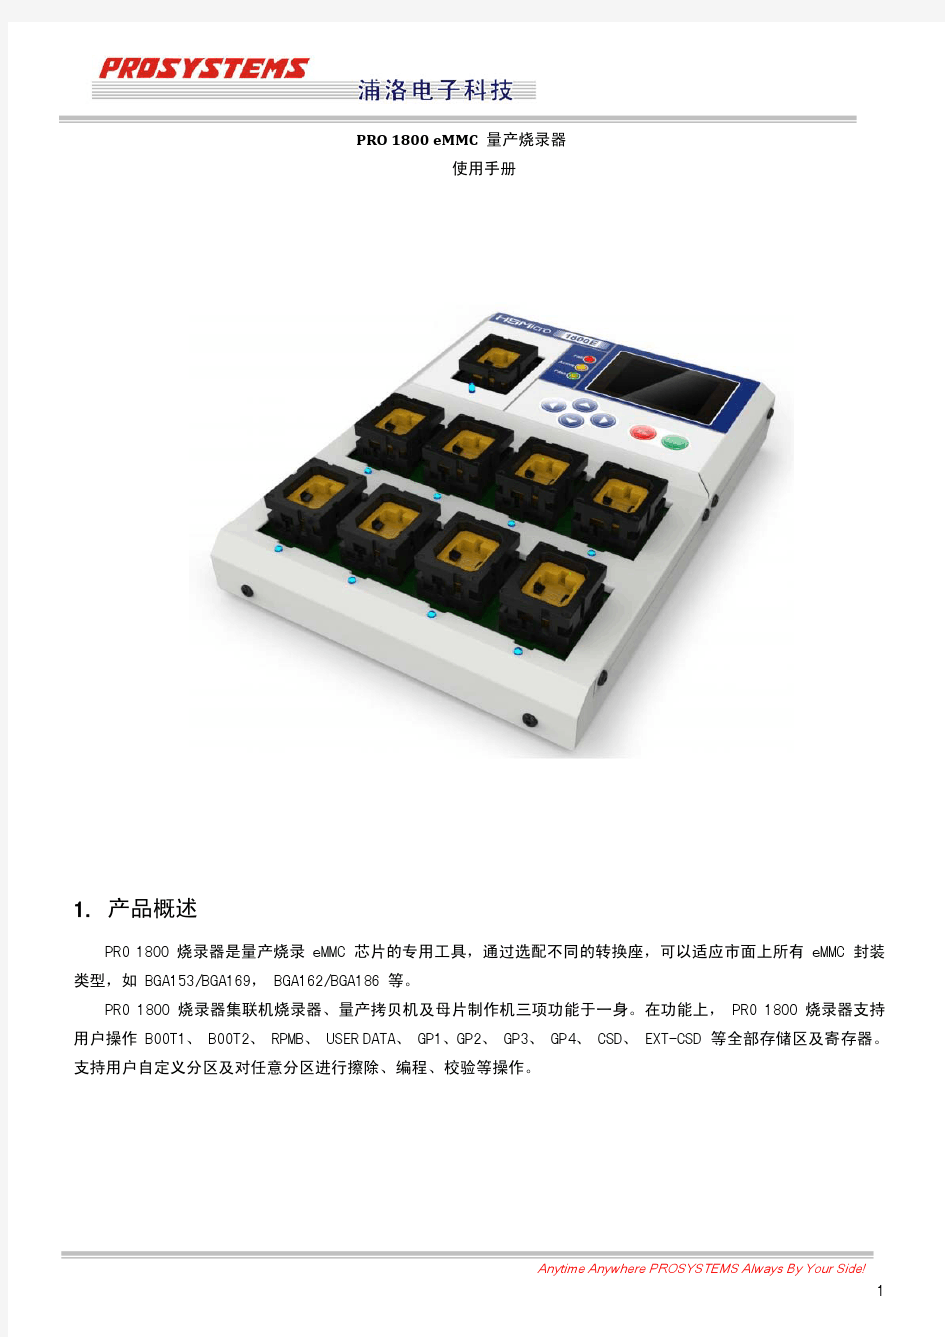 PRO 1800 eMMC量产烧录器使用手册